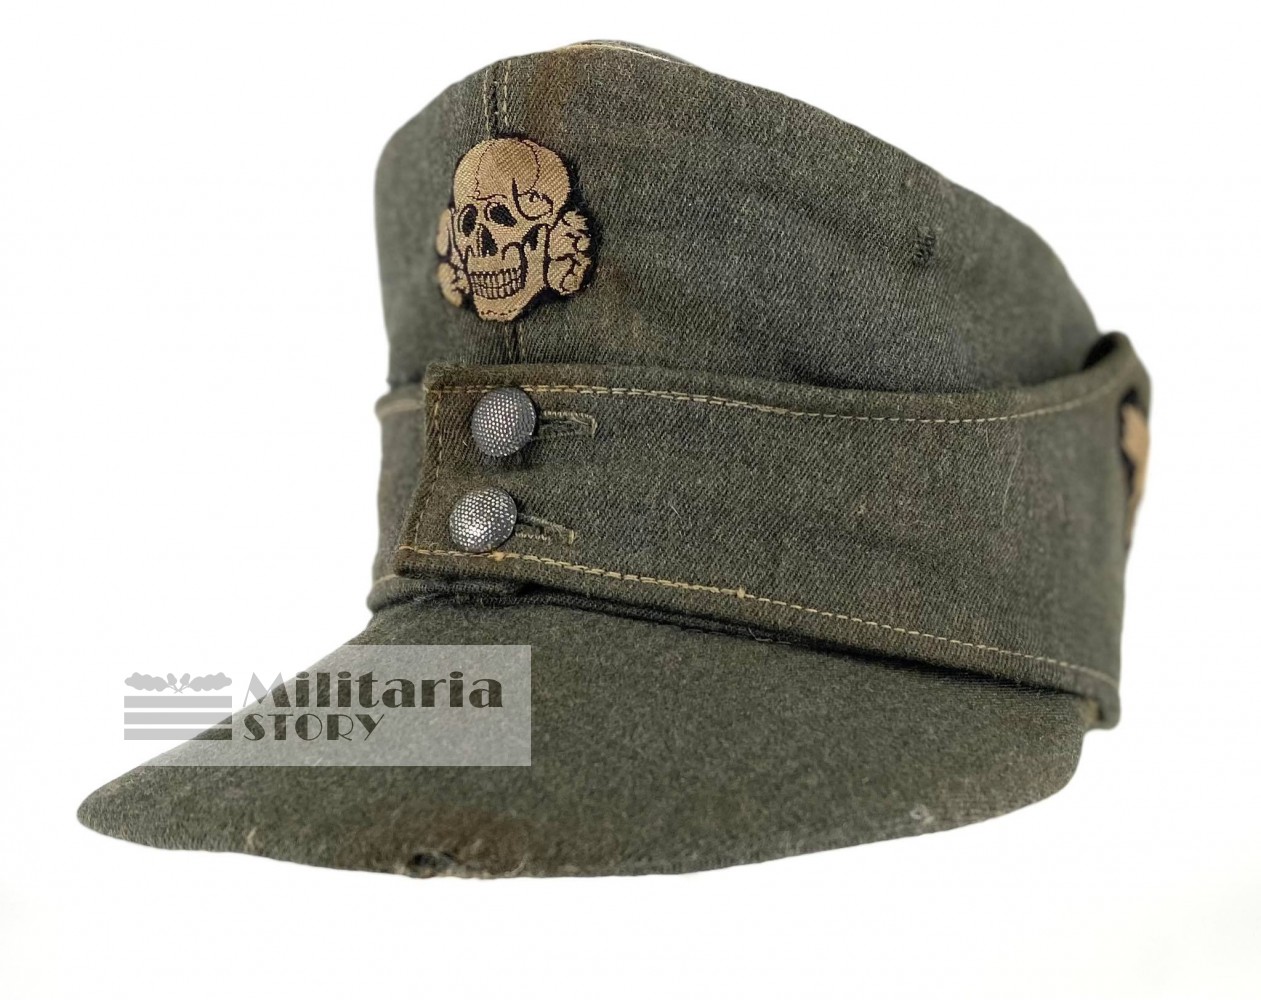 Waffen SS Officer field cap - Waffen SS Officer field cap: pre-war German Headgear